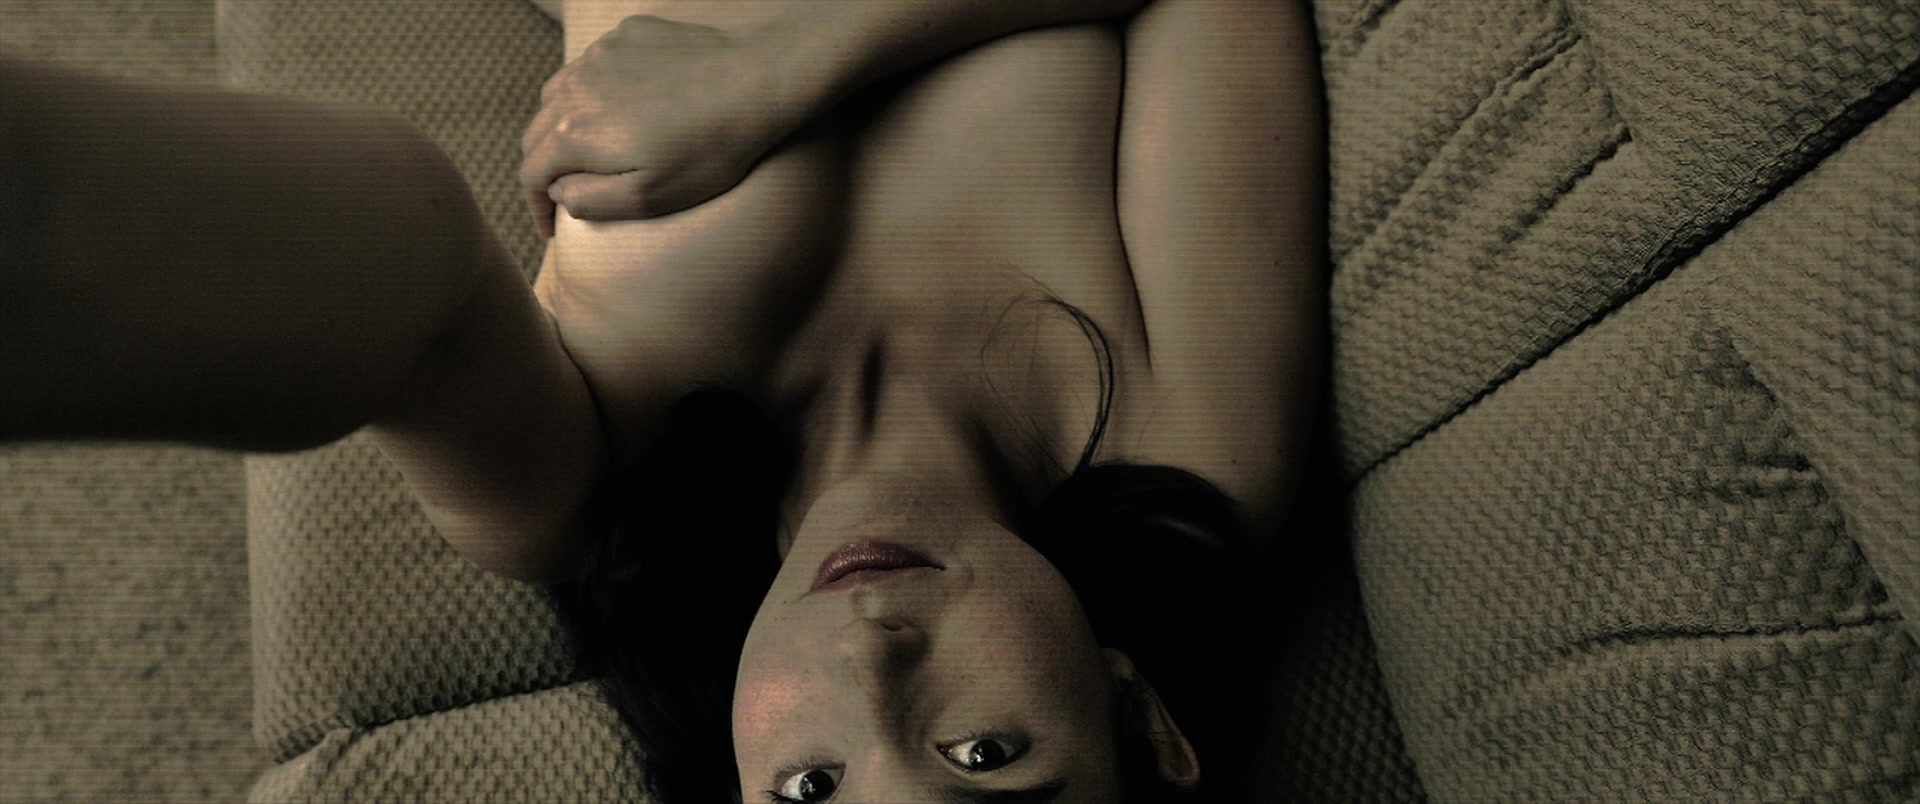 Jenny Raven nude pics.